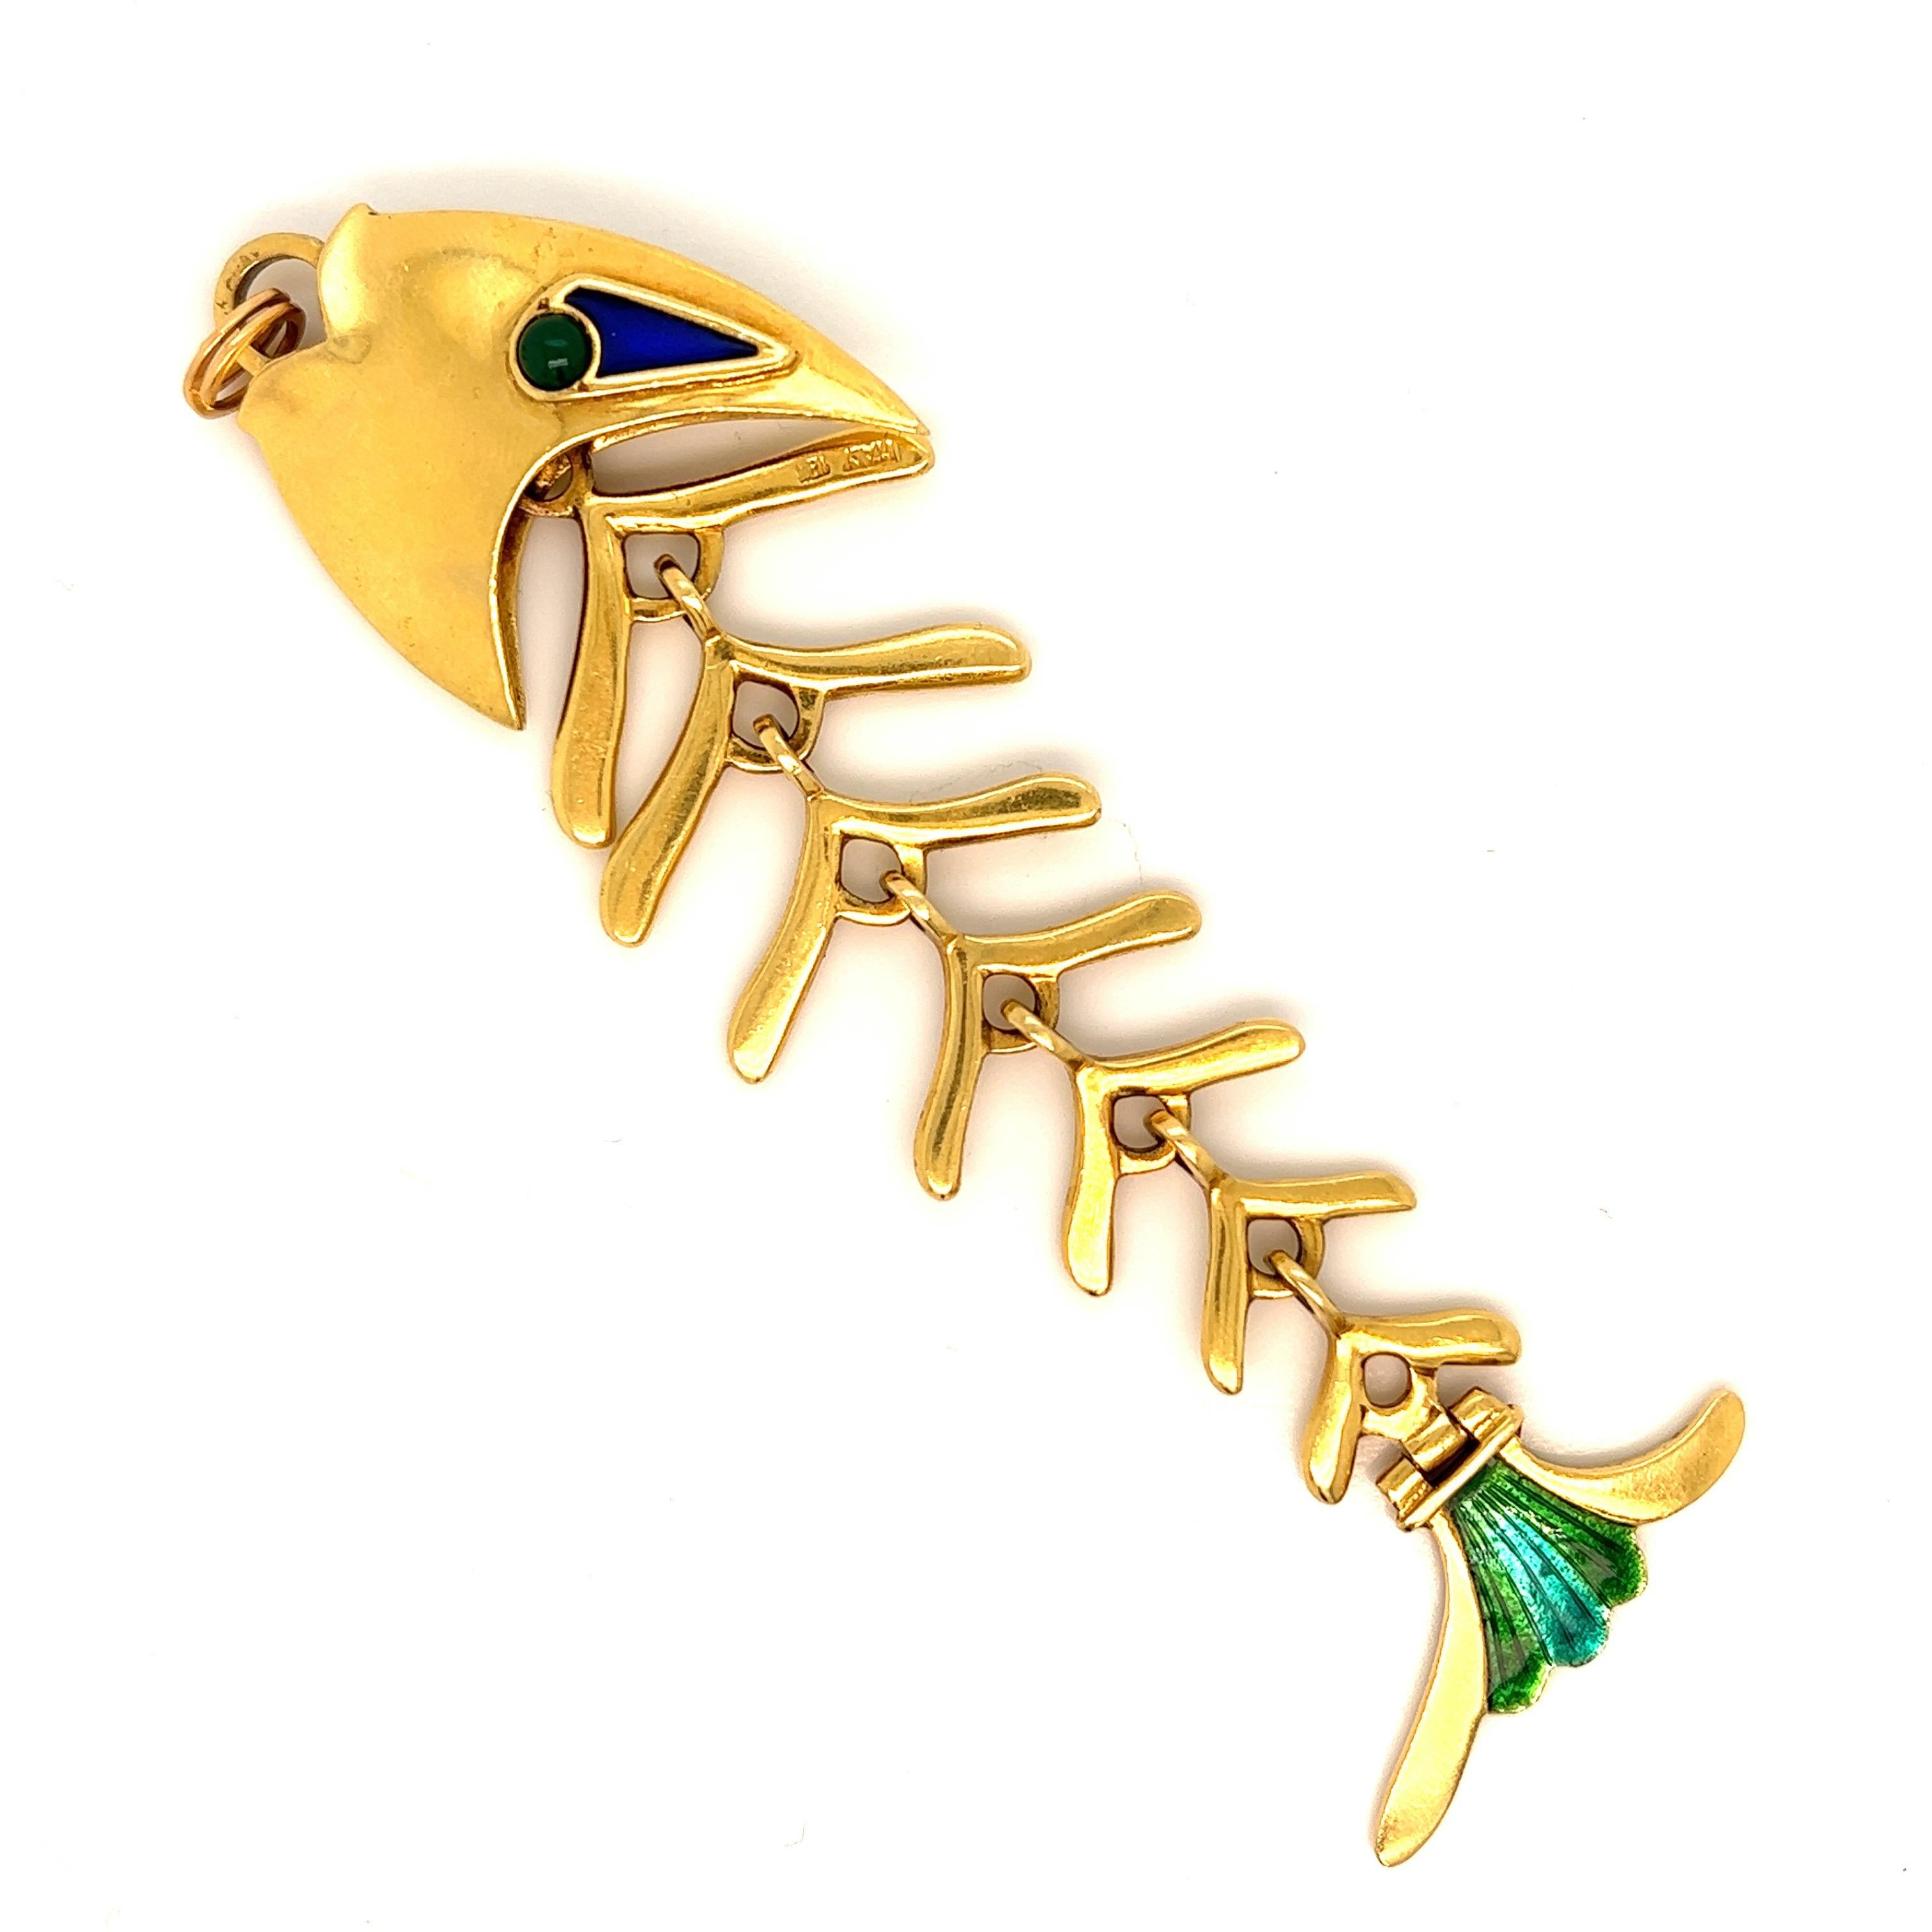 tiffany fish necklace